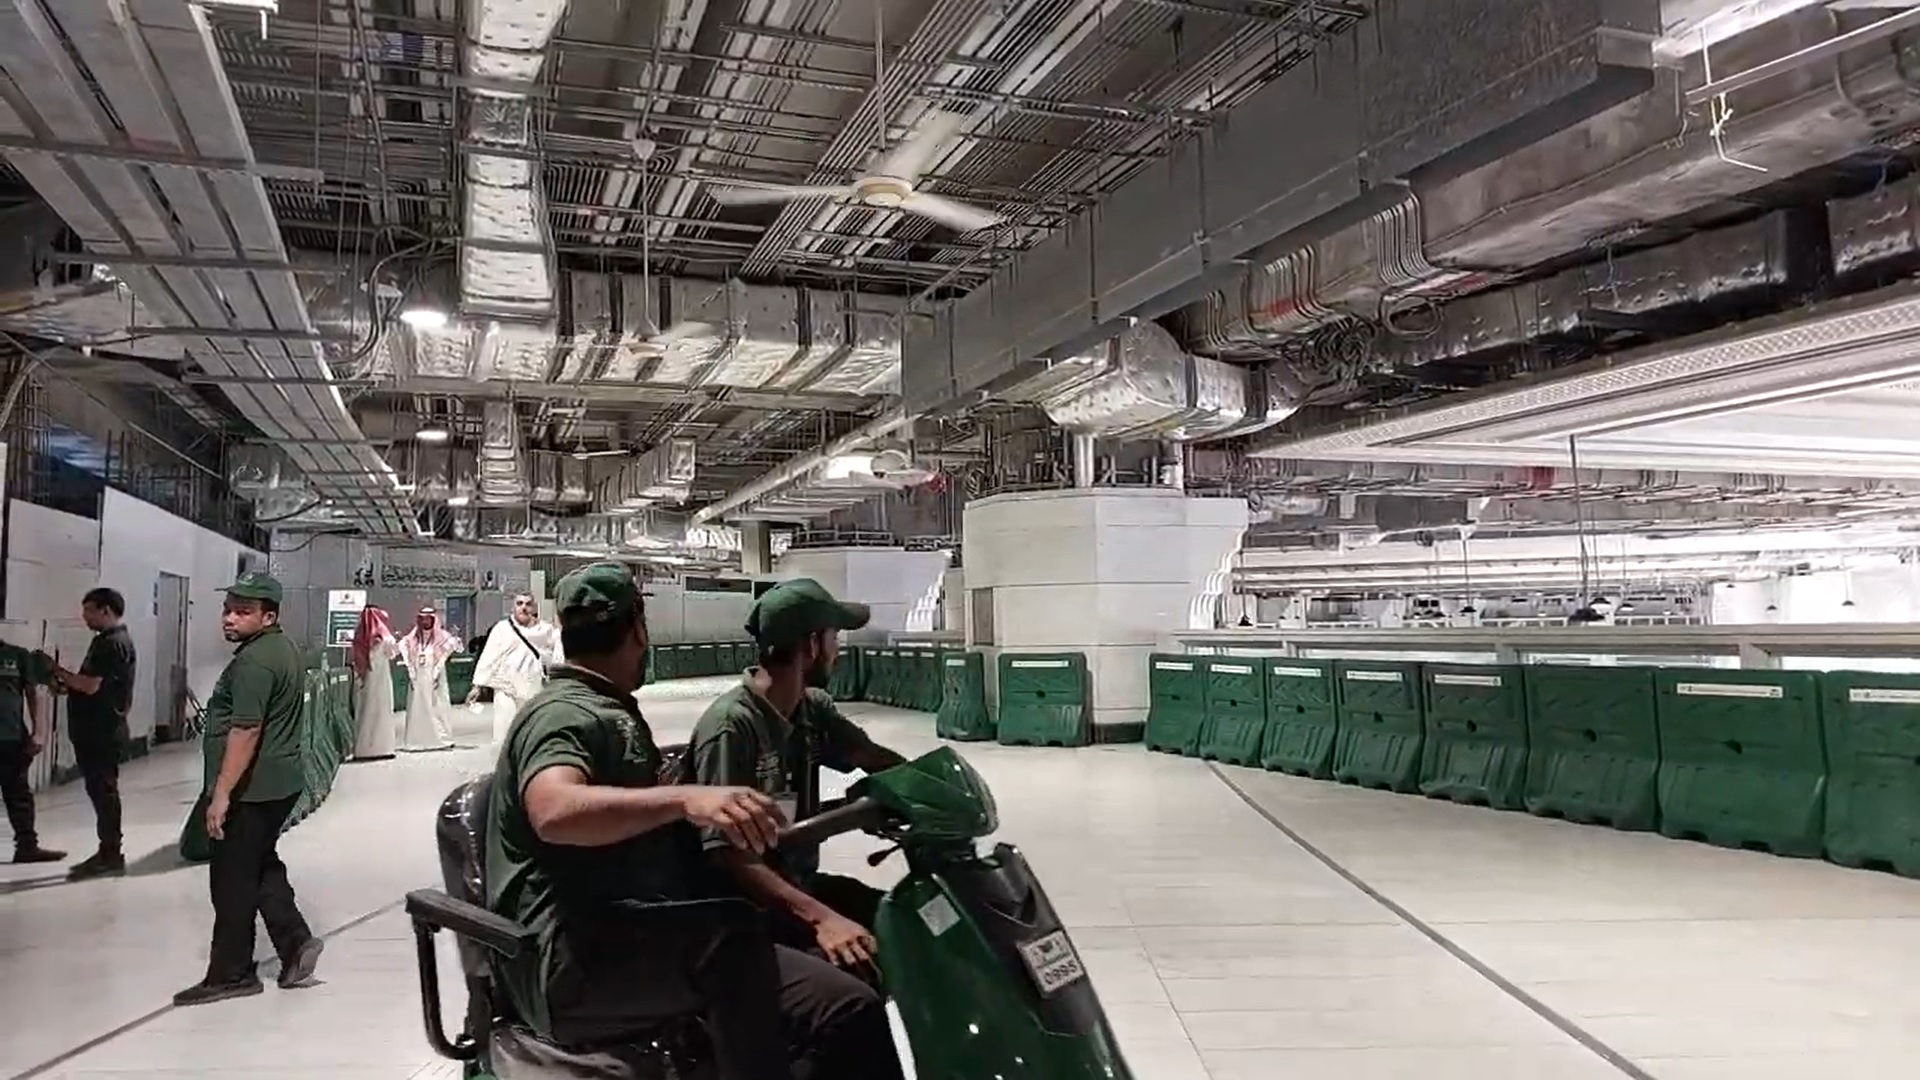 Jamaah Lansia dan Disabilitas Bisa Sewa Skuter dan Kursi Roda, Segini Tarifnya